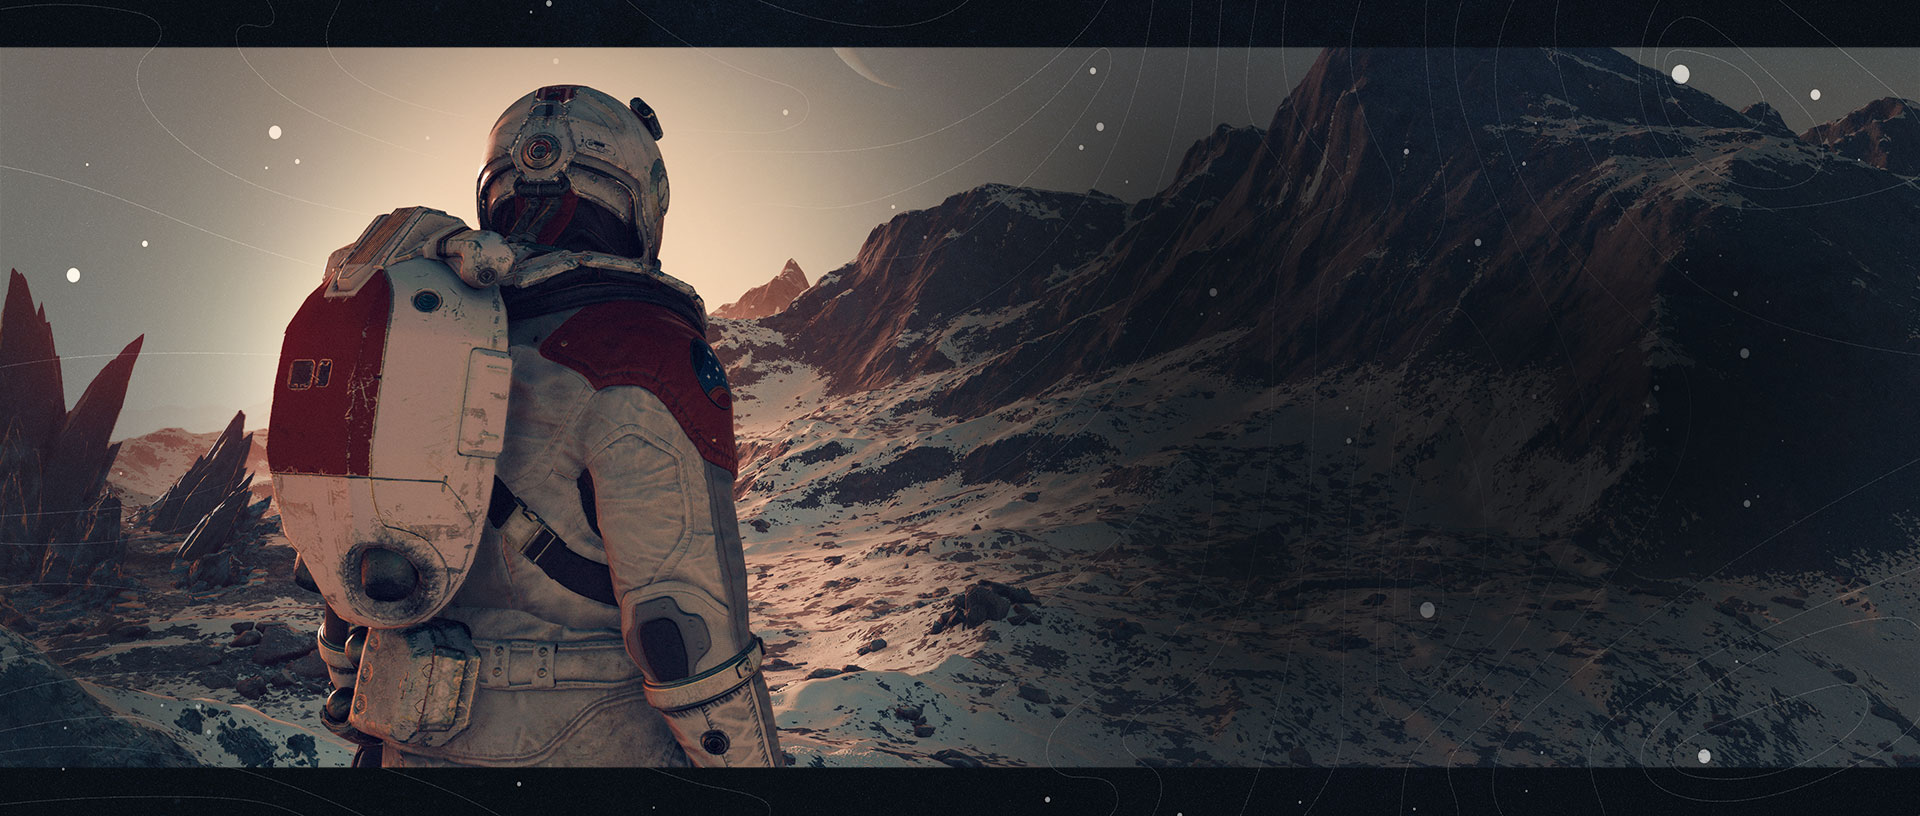 Um explorador olha para os topos das montanhas nevadas enquanto um planeta anelado aparece no céu.